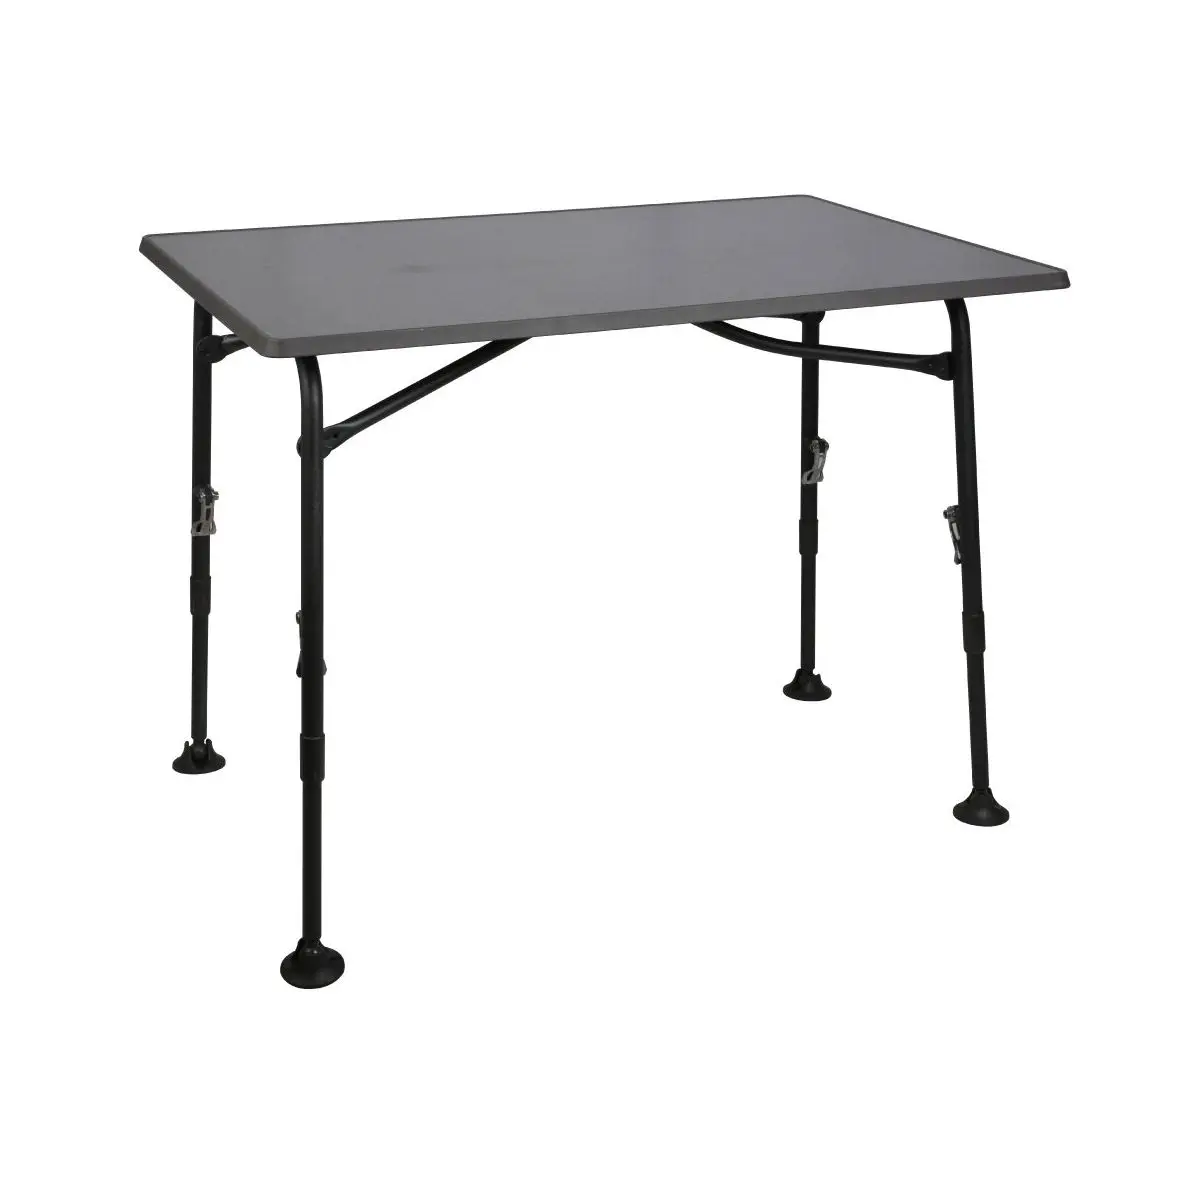 Kempingový stôl Performance Aircolite - 100, čierny